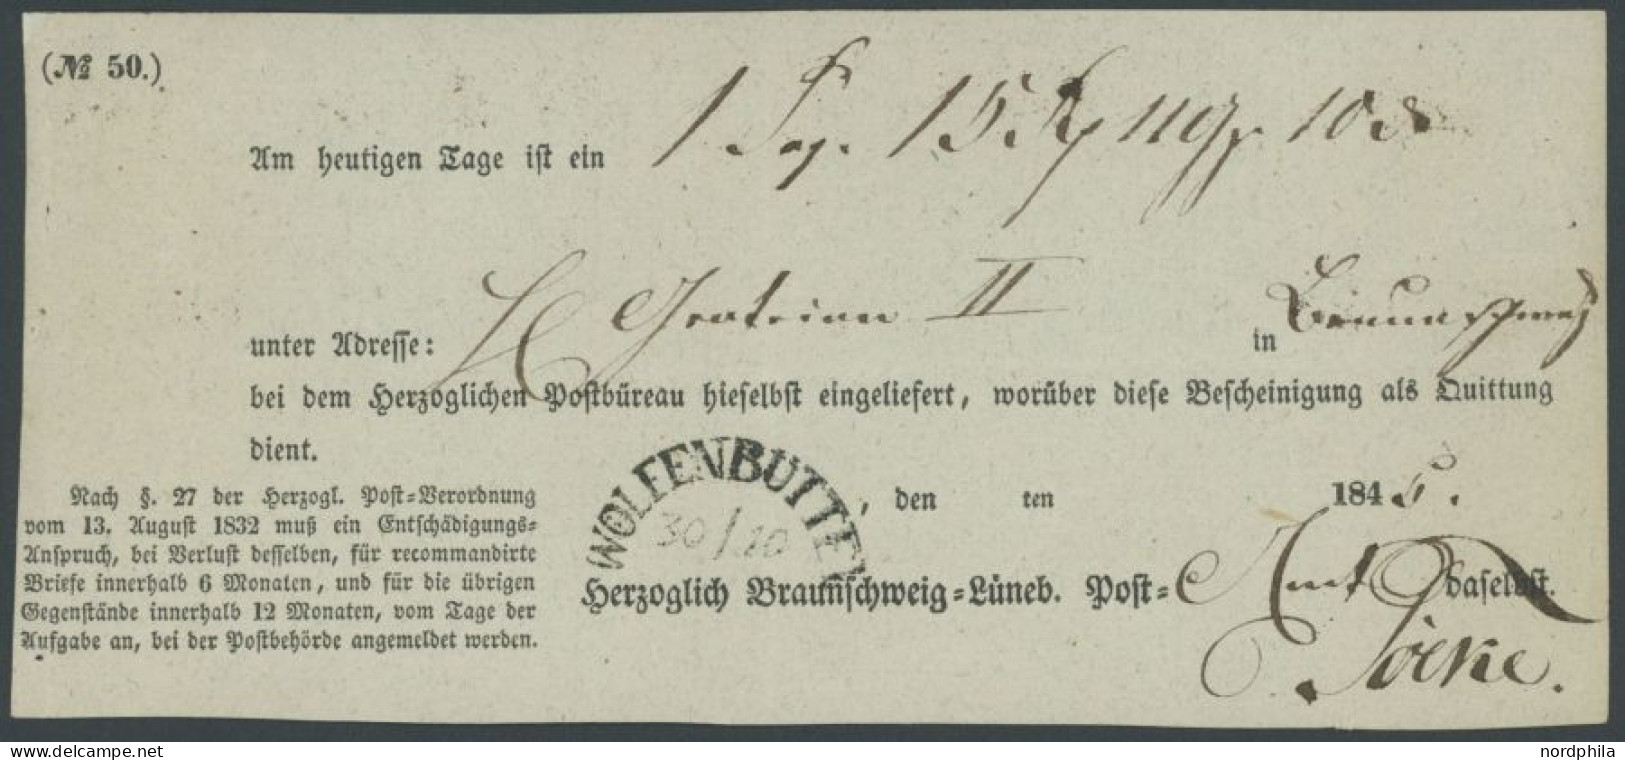 BRAUNSCHWEIG WOLFENBÜTTEL, Halbkreisstempel Auf Postschein (1845), Herzoglich Braunschweig Lüneb. Post, Pracht - [Voorlopers